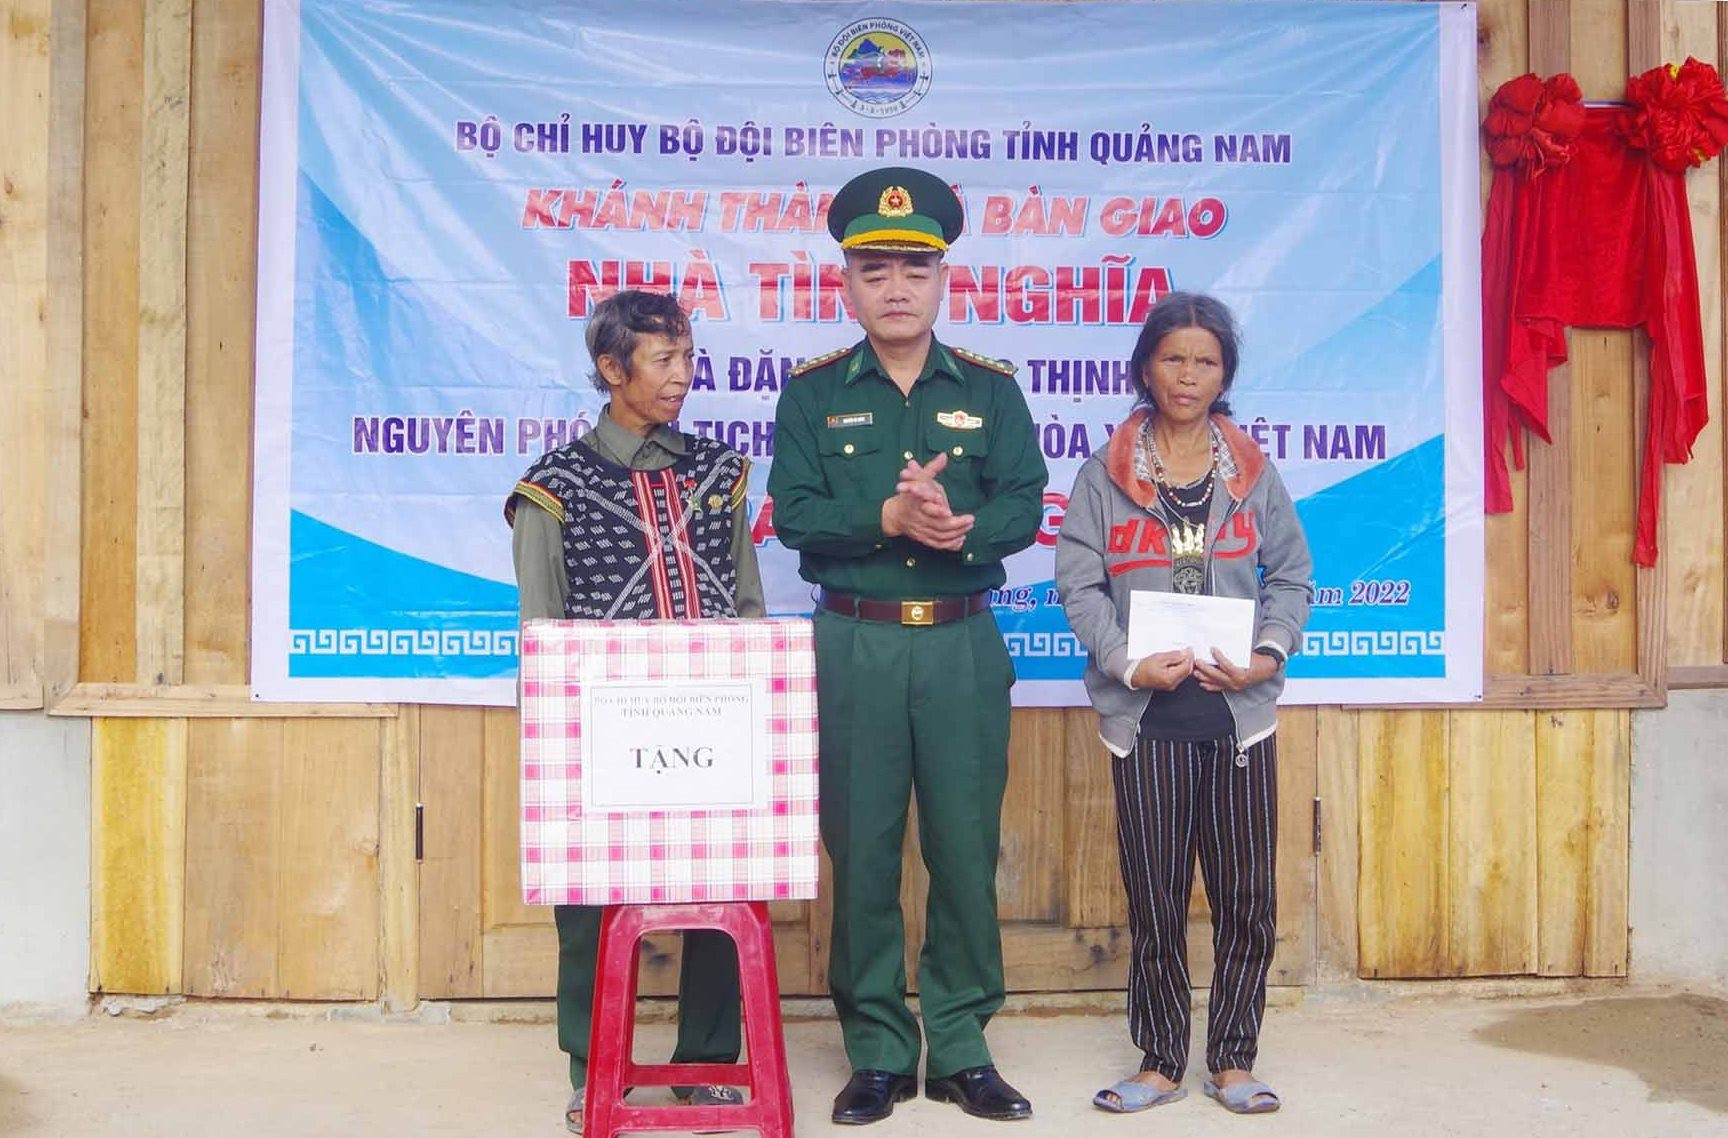 Đại tá Nguyễn Bá Hưng - Phó Chính ủy BĐBP tỉnh tặng quà gia đình ông Zơ Râm Vừa. Ảnh: HỒNG ANH